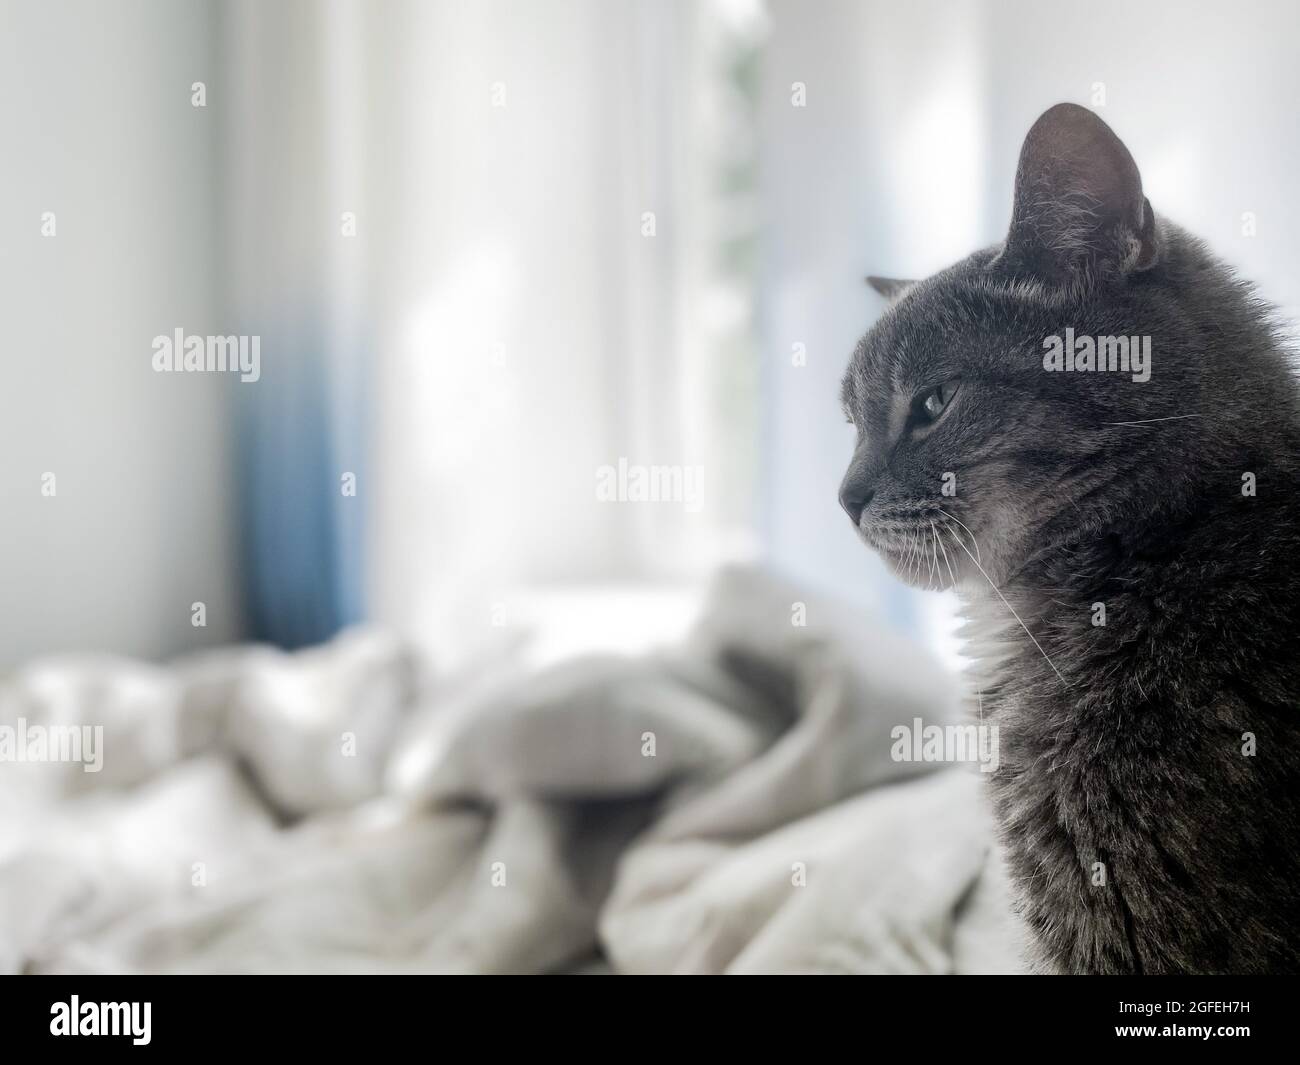 Un beau chat gris est assis sur le lit du propriétaire et regarde quelque part. Sur fond de rideaux bleus, linge de lit blanc. Copier la flèche Banque D'Images